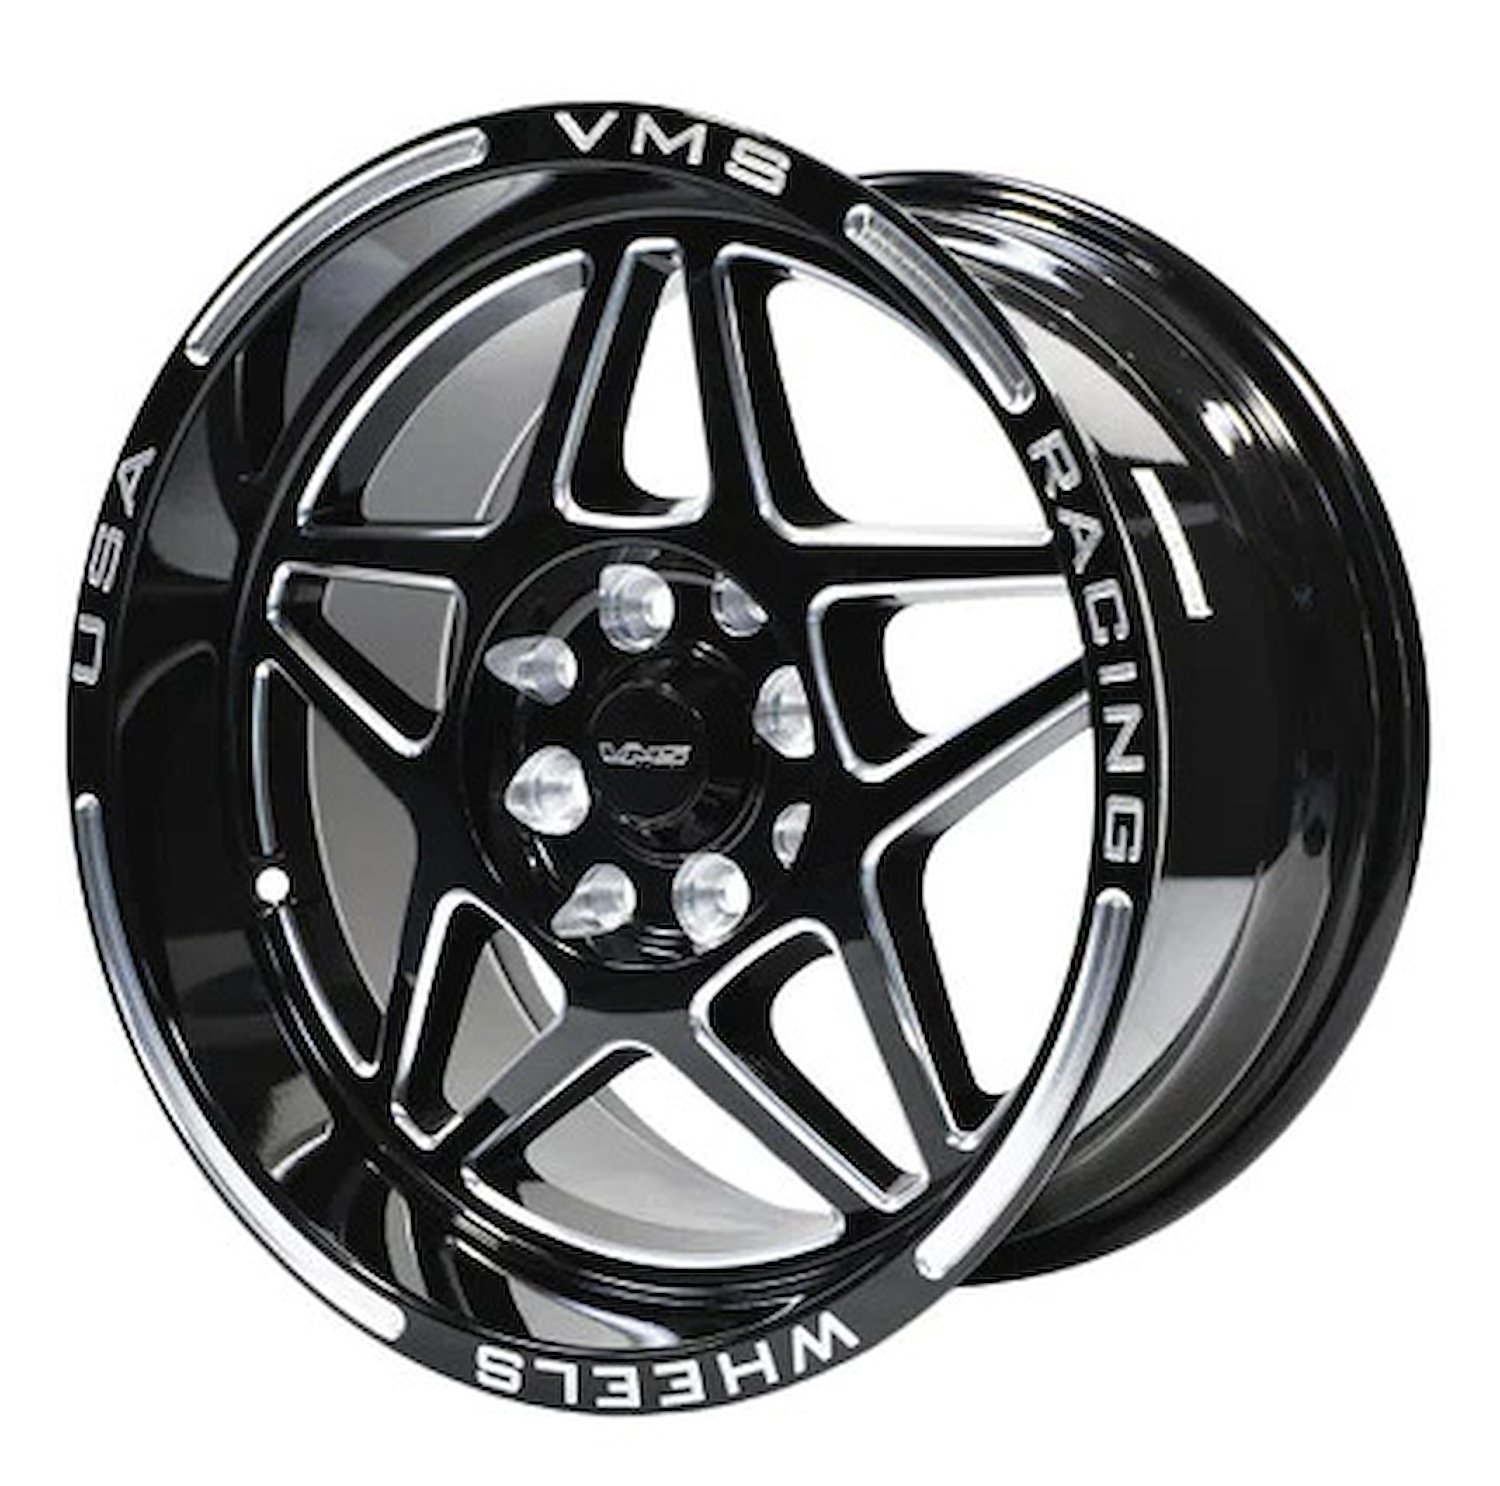 VWDA001 Delta Wheel, Size: 15" x 8", Bolt Pattern: 4 x 100 mm & 4 x 4 1/2" (114.3 mm) [Finish: Gloss Black Milled]